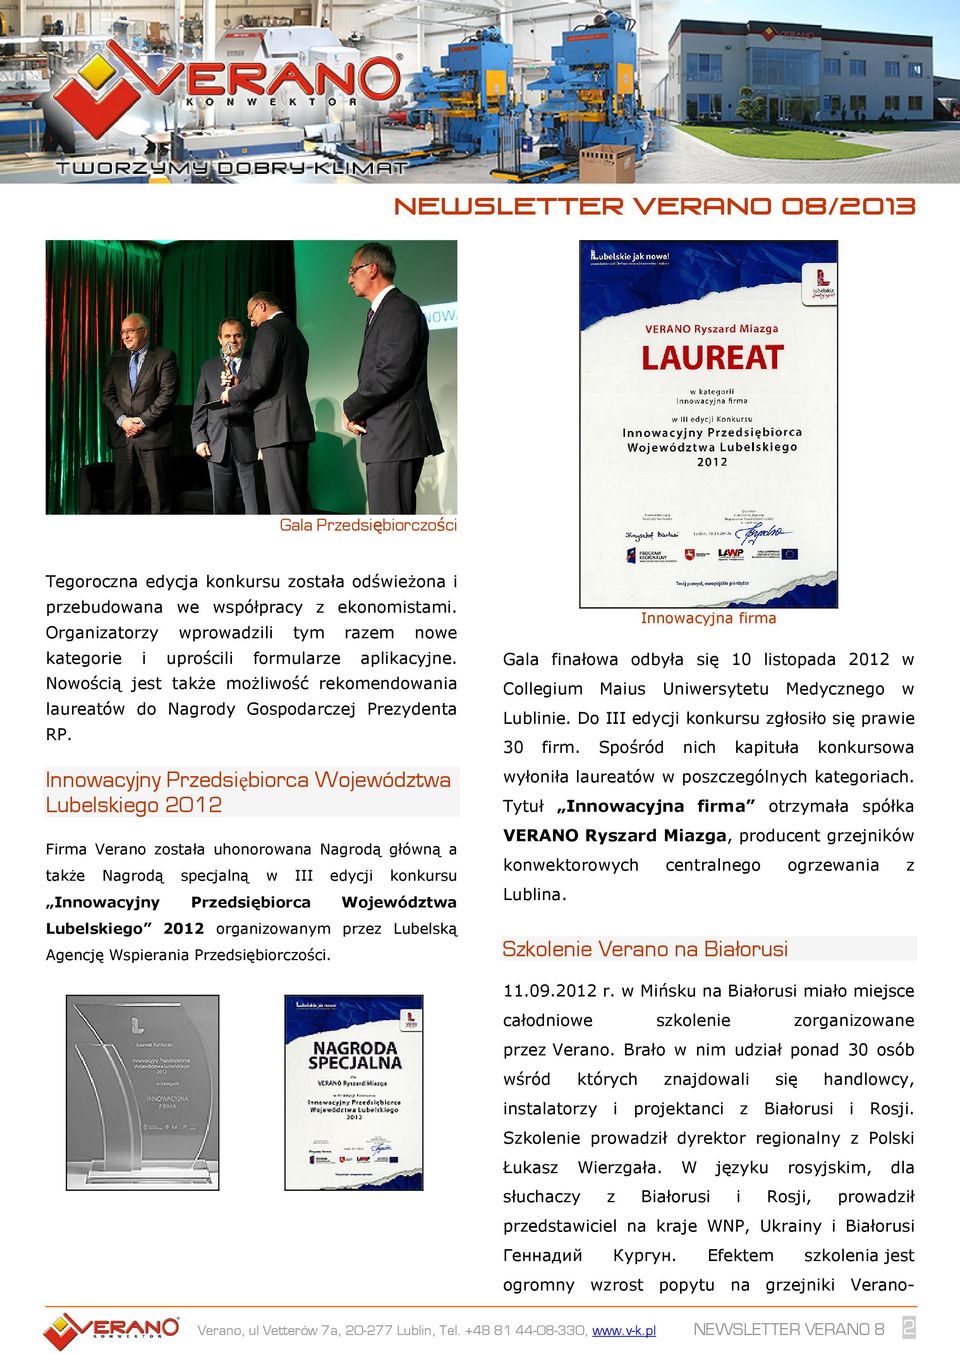 Innowacyjny Przedsiębiorca Województwa Lubelskiego 2012 Firma Verano została uhonorowana Nagrodą główną a także Nagrodą specjalną w III edycji konkursu Innowacyjny Przedsiębiorca Województwa